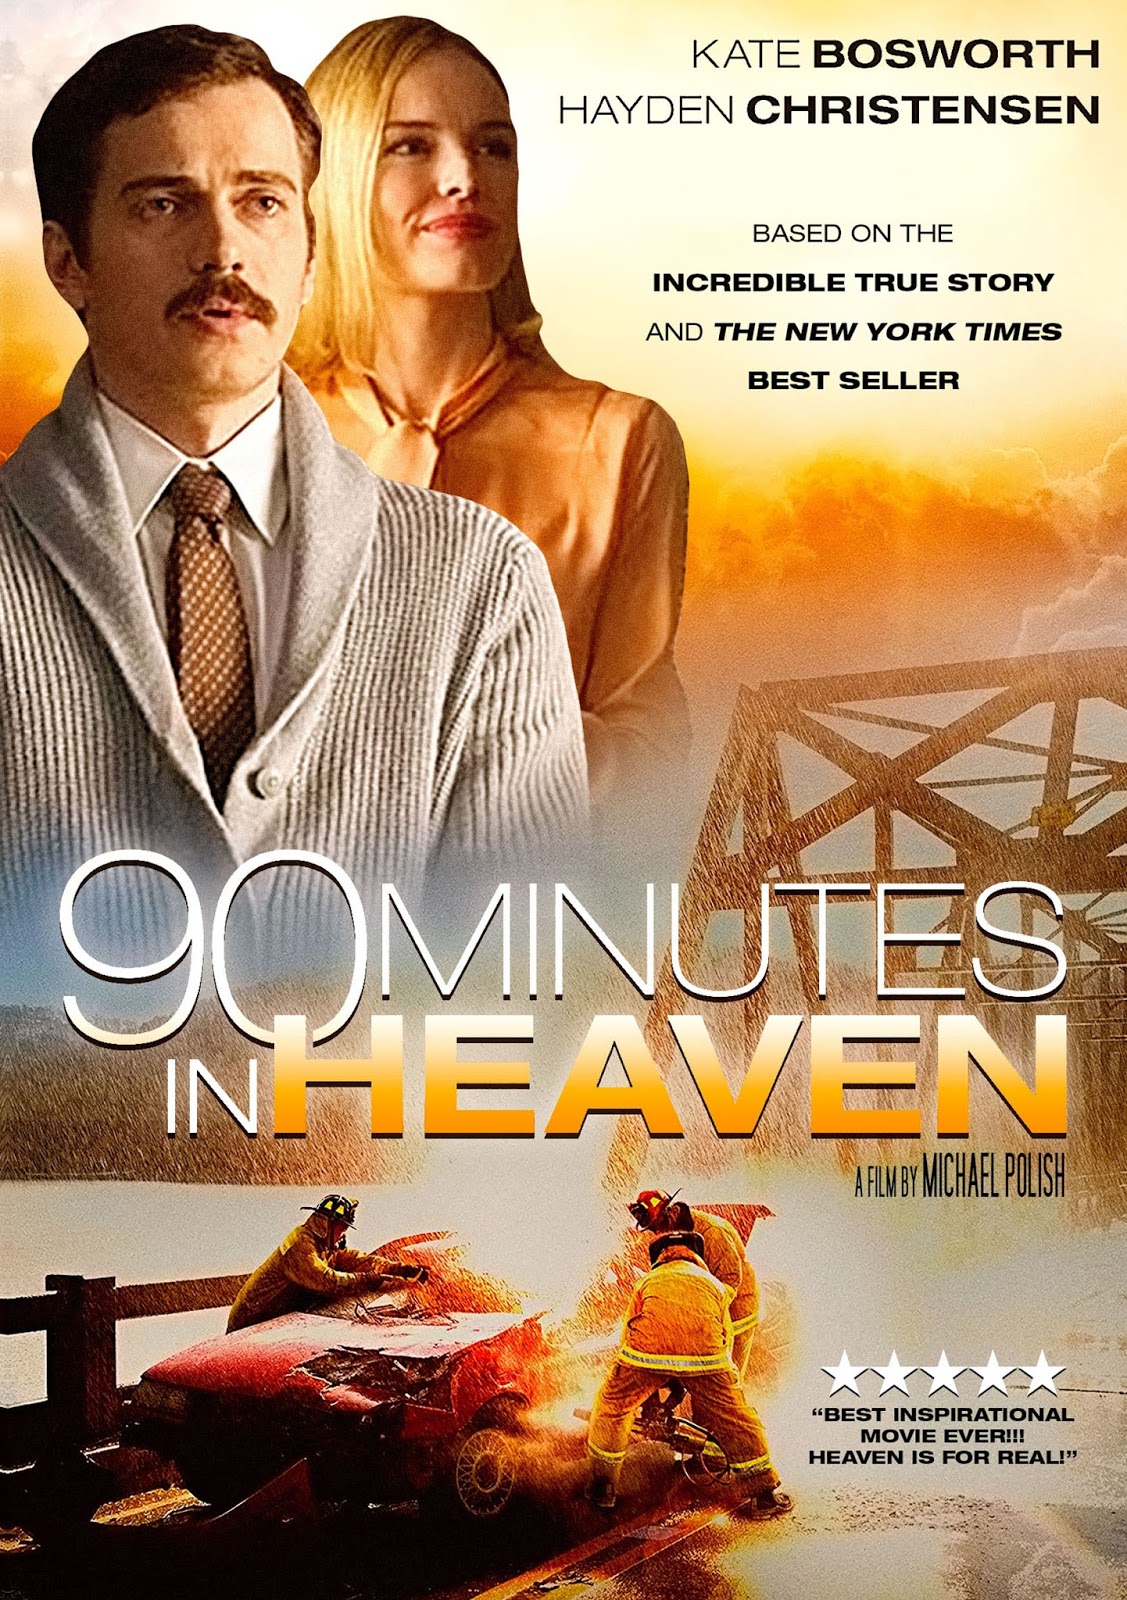 90 Minutes in Heaven (2015) ศรัทธาปาฏิหาริย์ - ดูหนังออนไลน